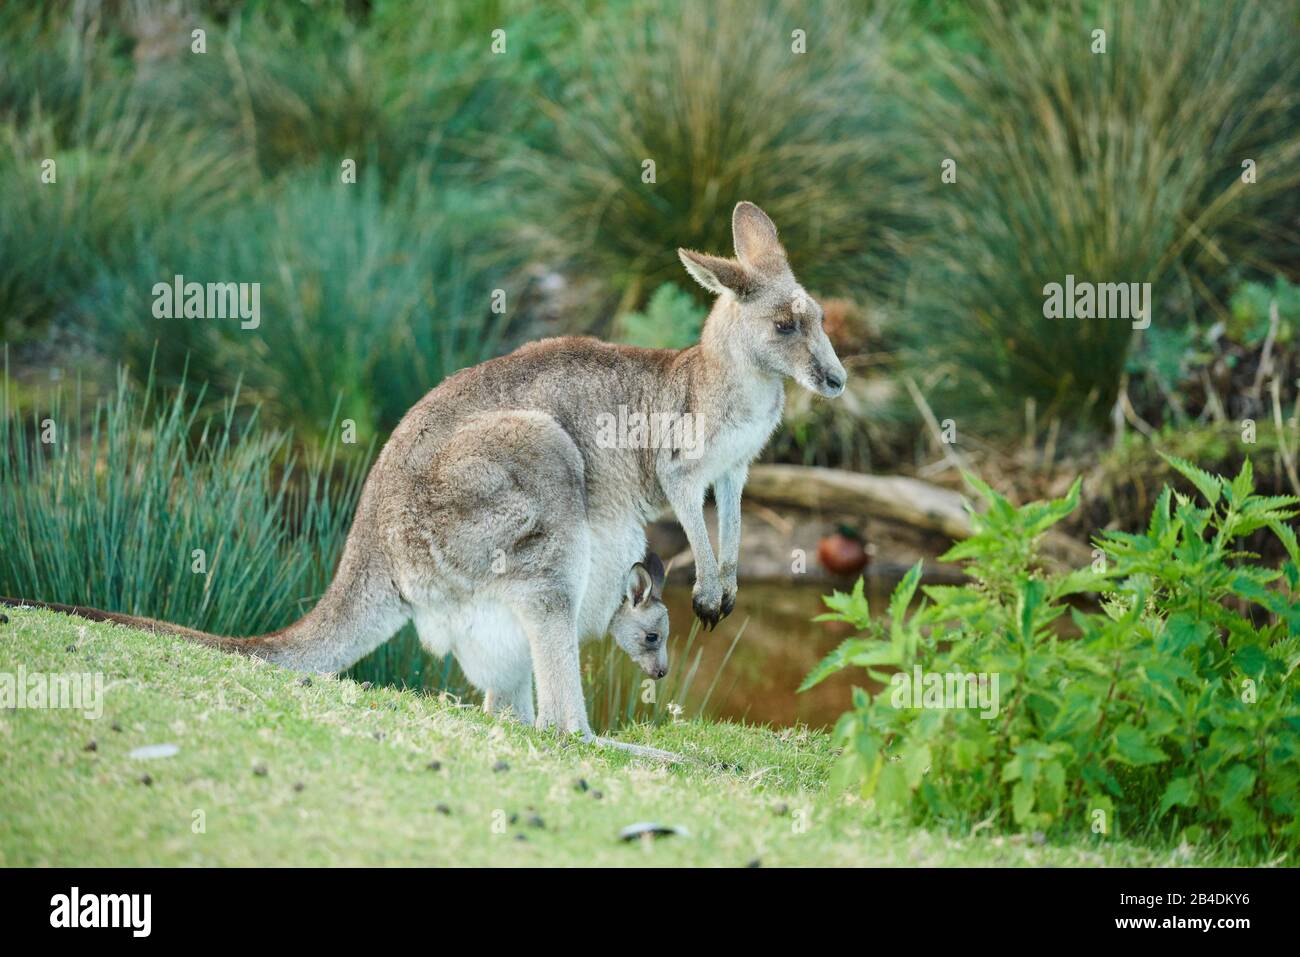 Kangourou géant gris oriental (Macropus giganteus), mère avec jeune en sac, prairie, latéral, debout, Australie, Océanie Banque D'Images